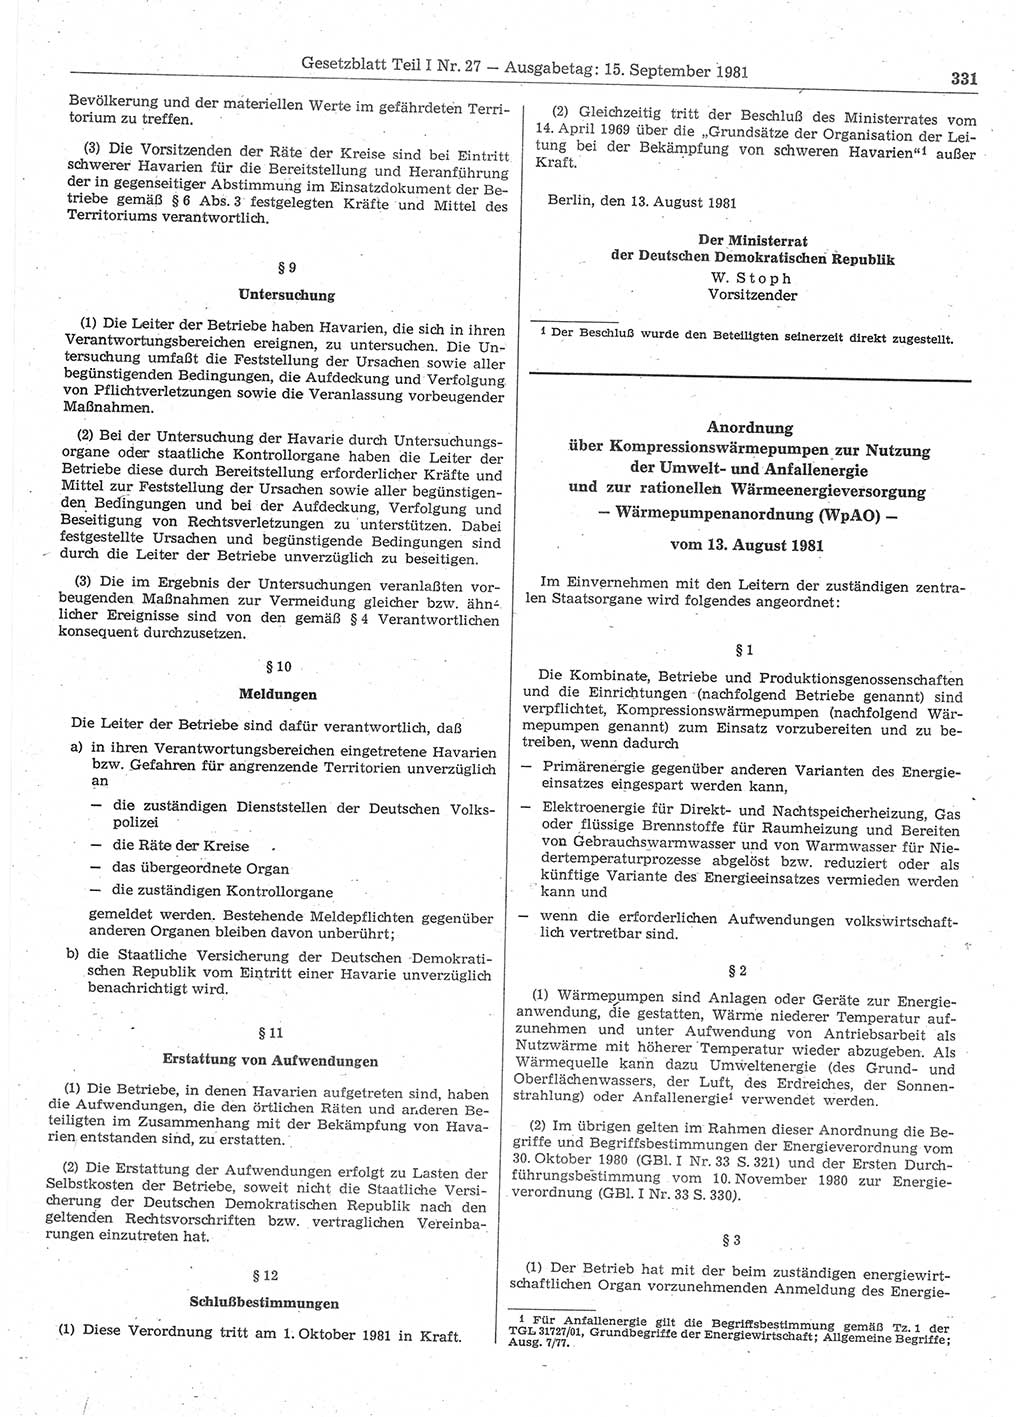 Gesetzblatt (GBl.) der Deutschen Demokratischen Republik (DDR) Teil Ⅰ 1981, Seite 331 (GBl. DDR Ⅰ 1981, S. 331)